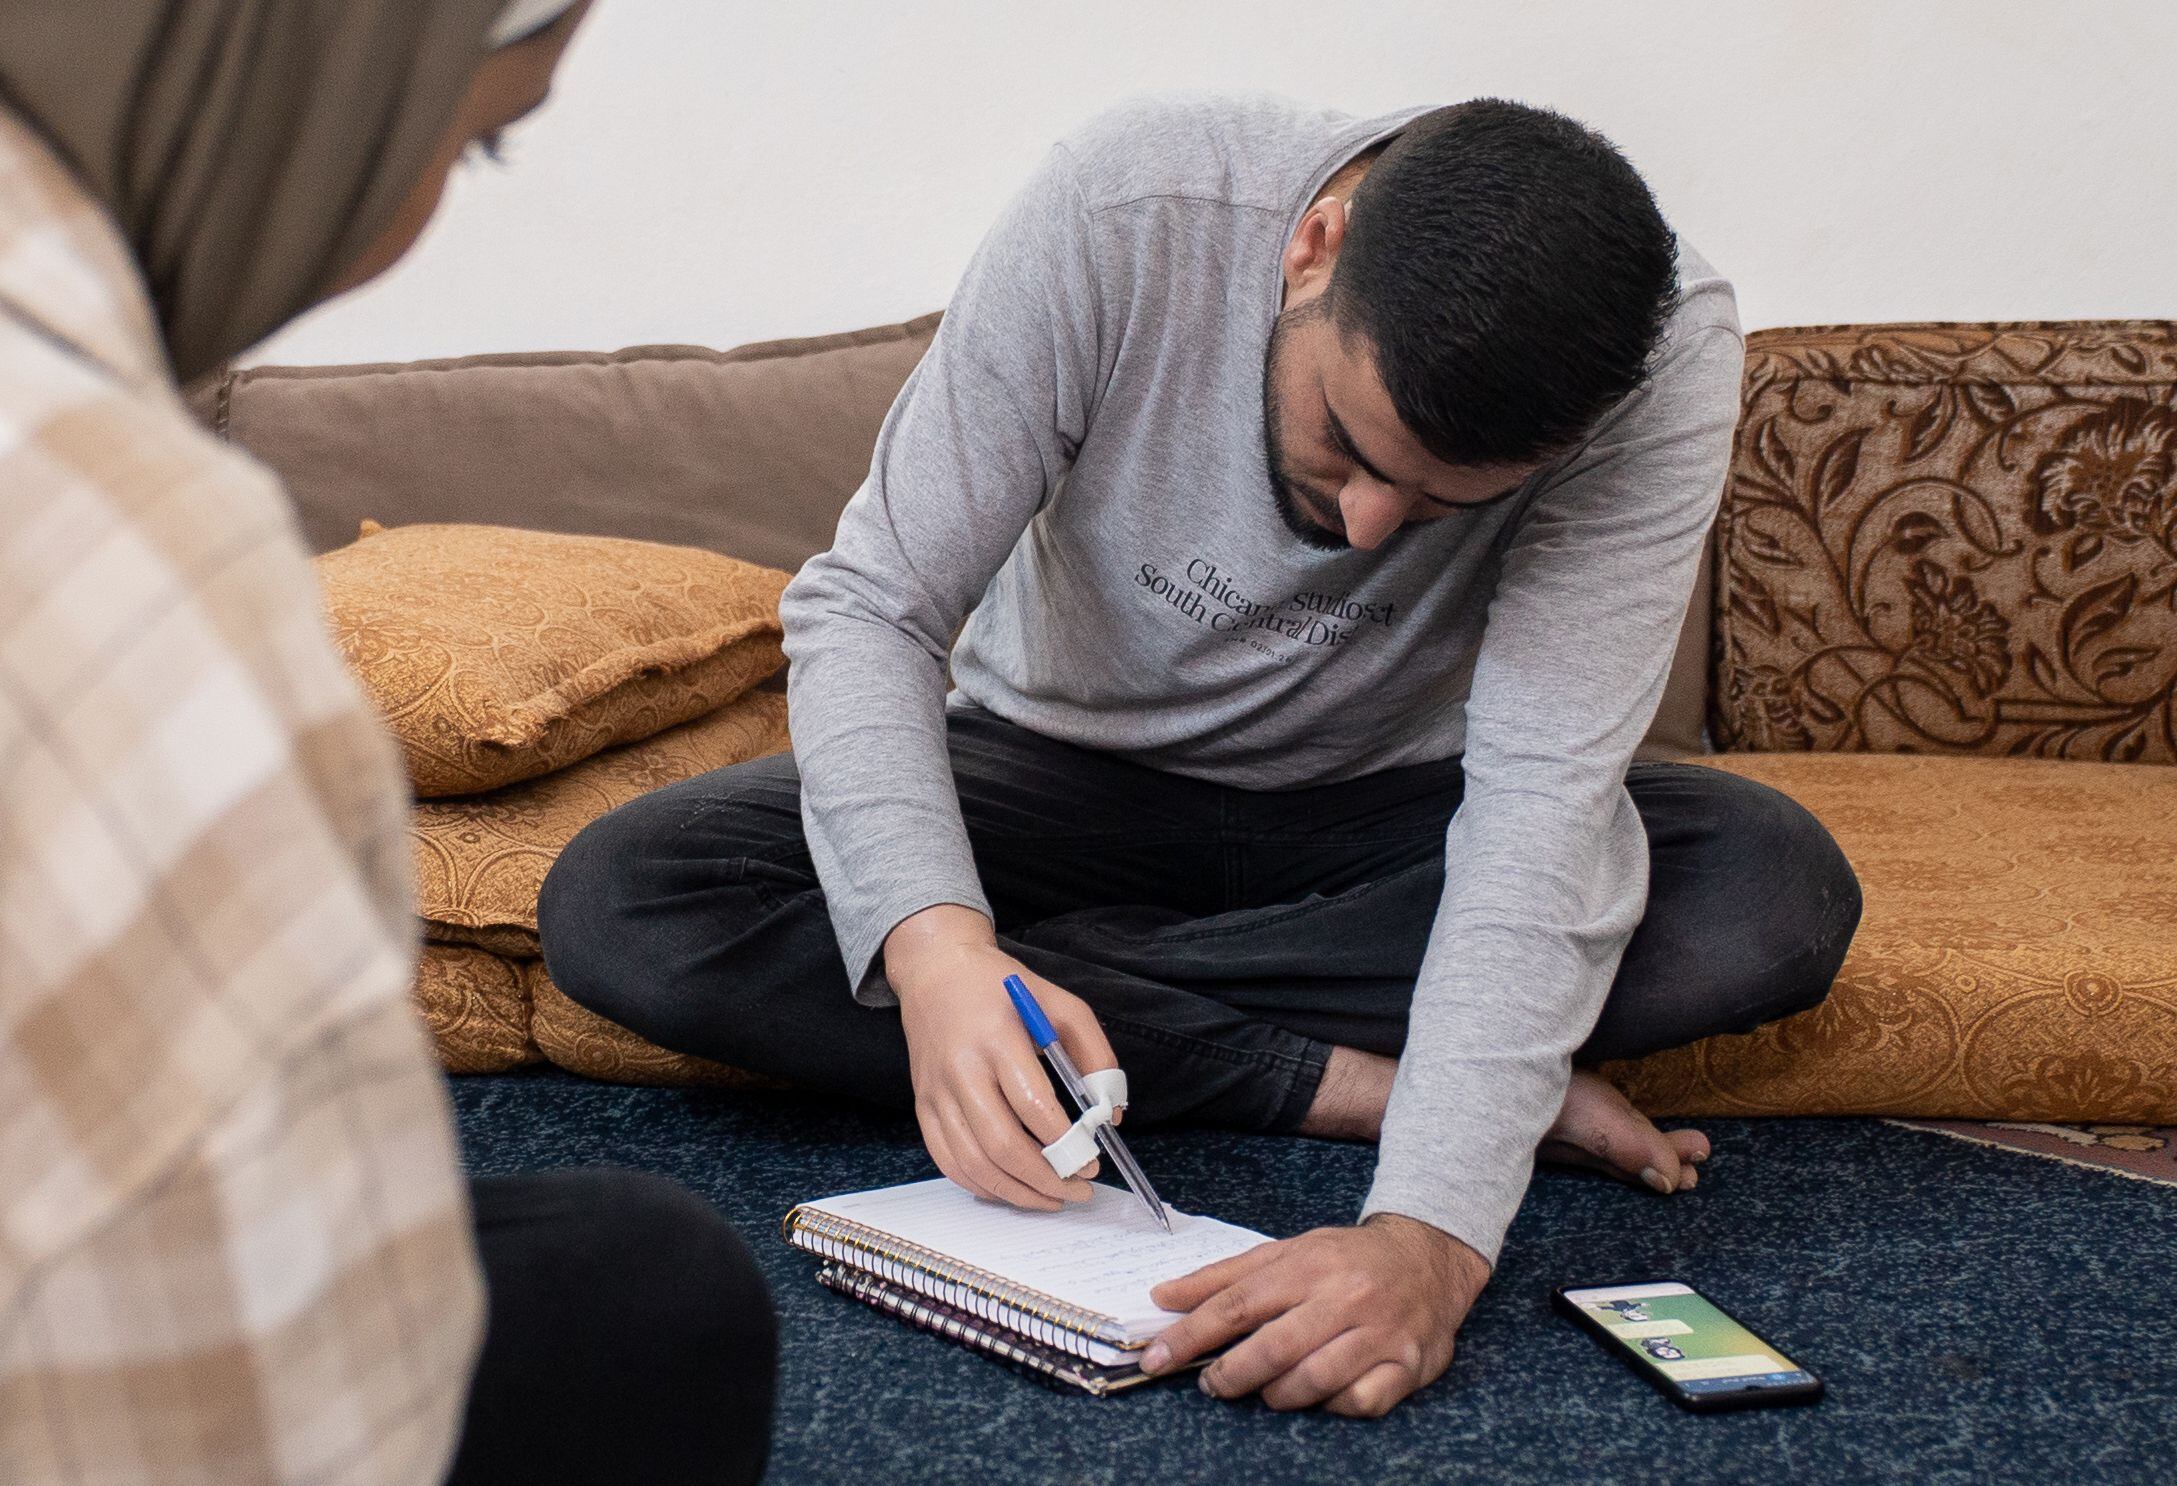 Mohamed Taysir escribía el martes con su prótesis, en su casa de la ciudad de Irbid, al norte de Jordania.